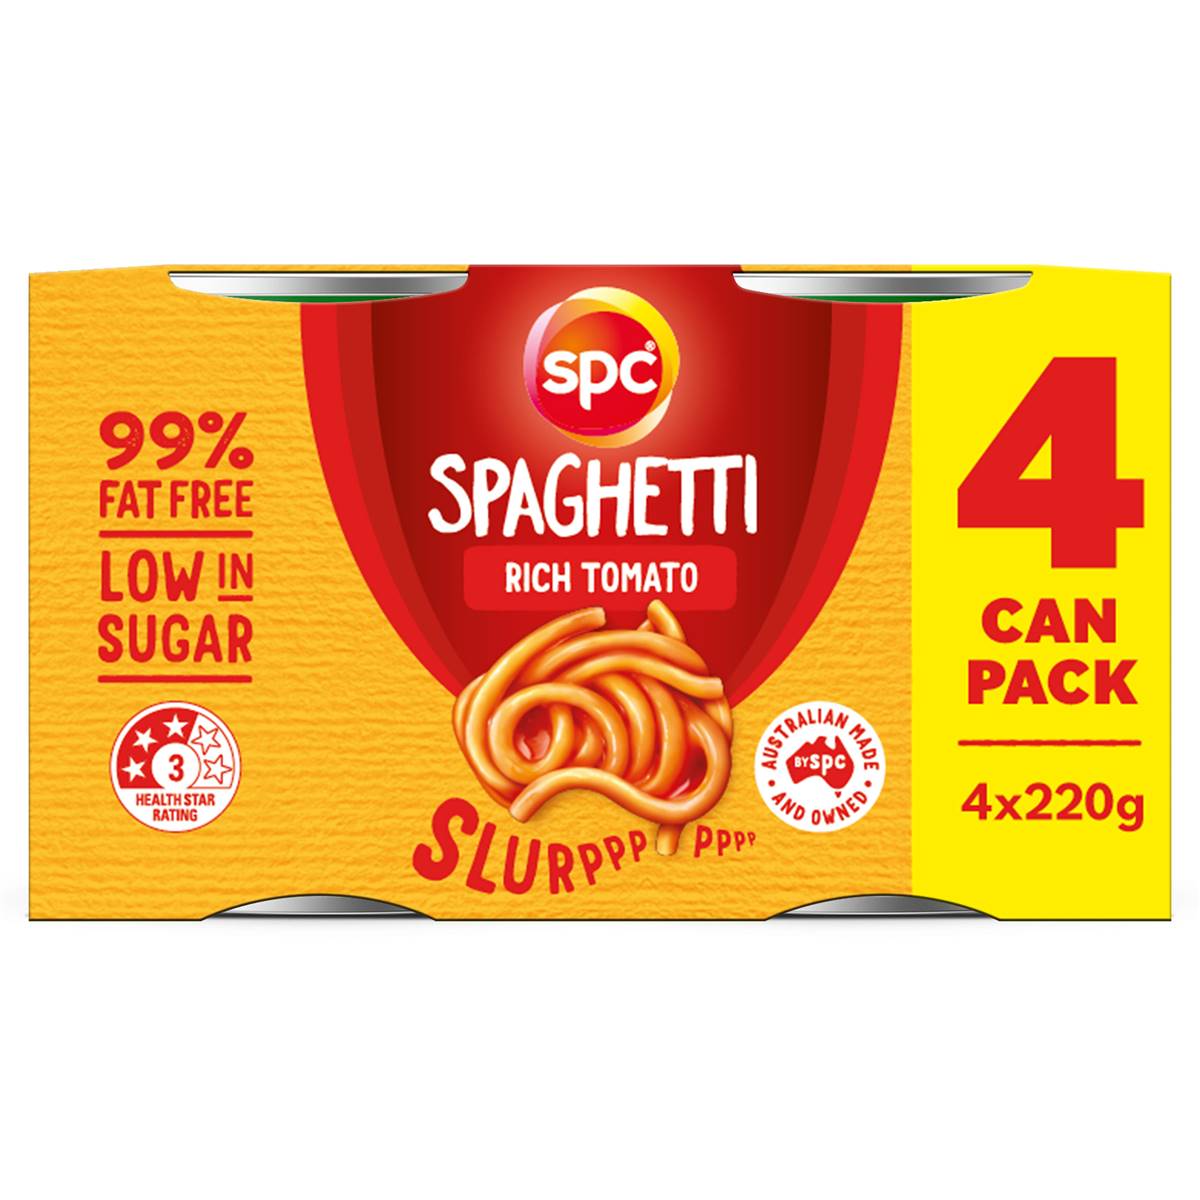 Calories in Spc Spaghetti Rich Tomato Sauce